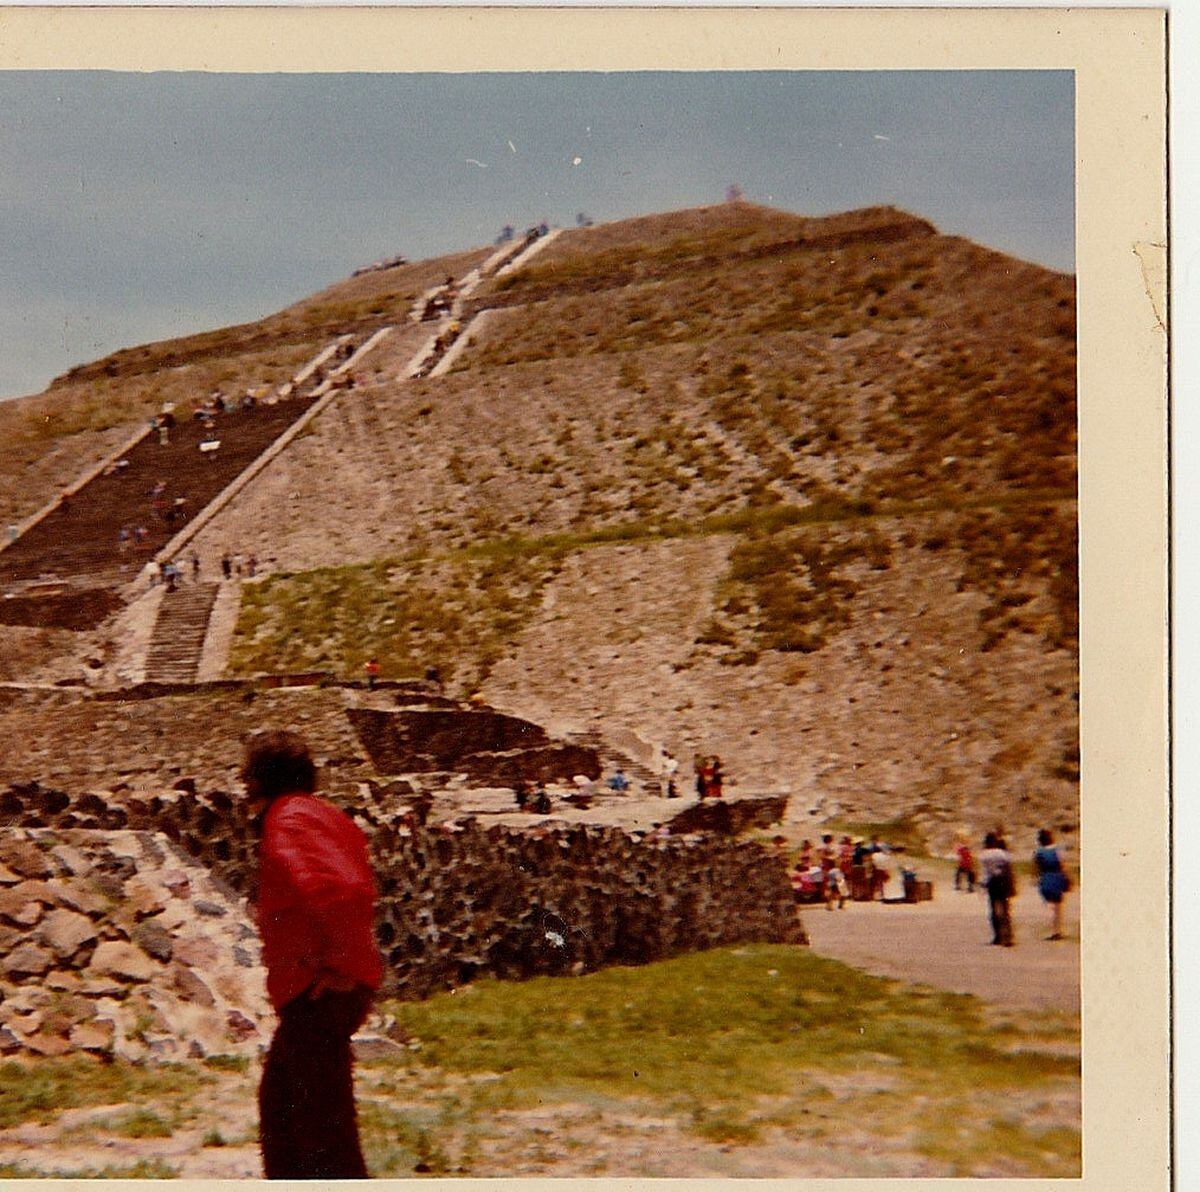 Viendo las pirámides de Teotihuacan